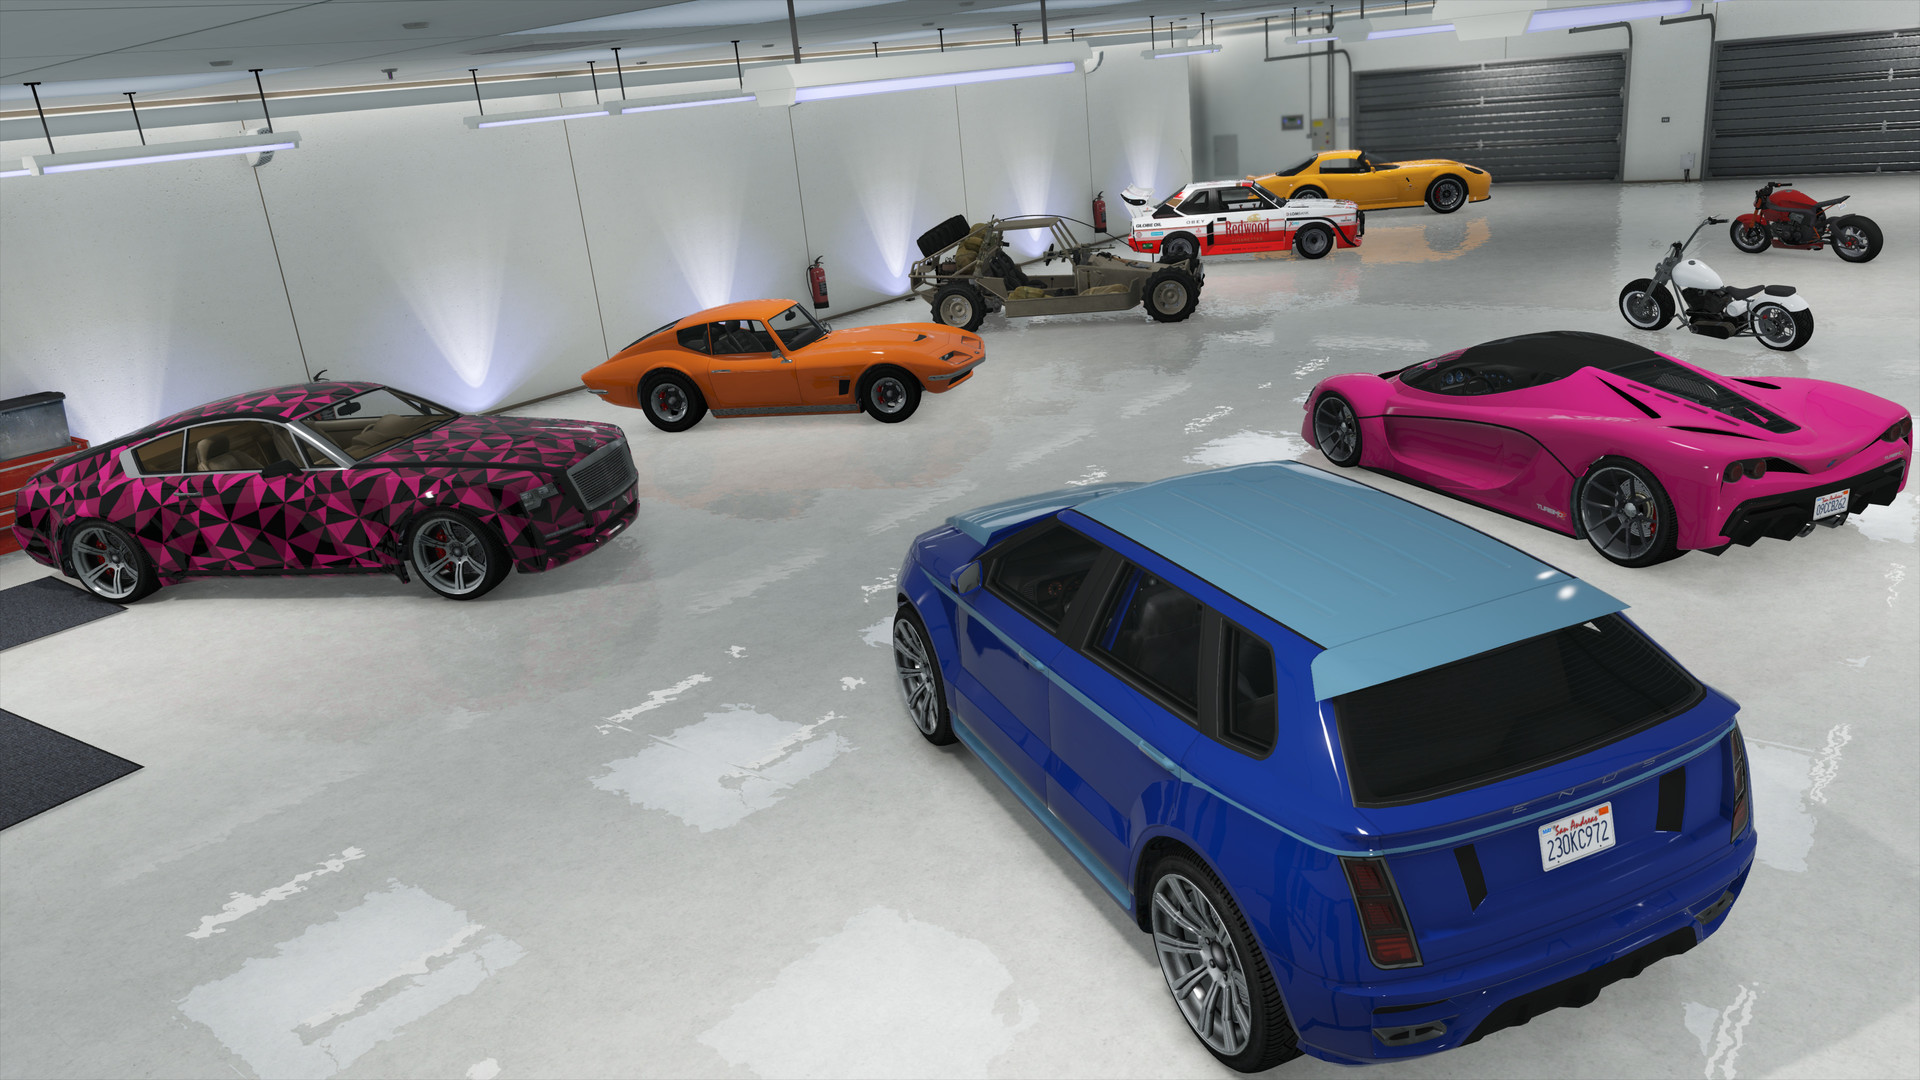 Grand Theft Auto V Criminal Enterprise Starter Pack On Steam